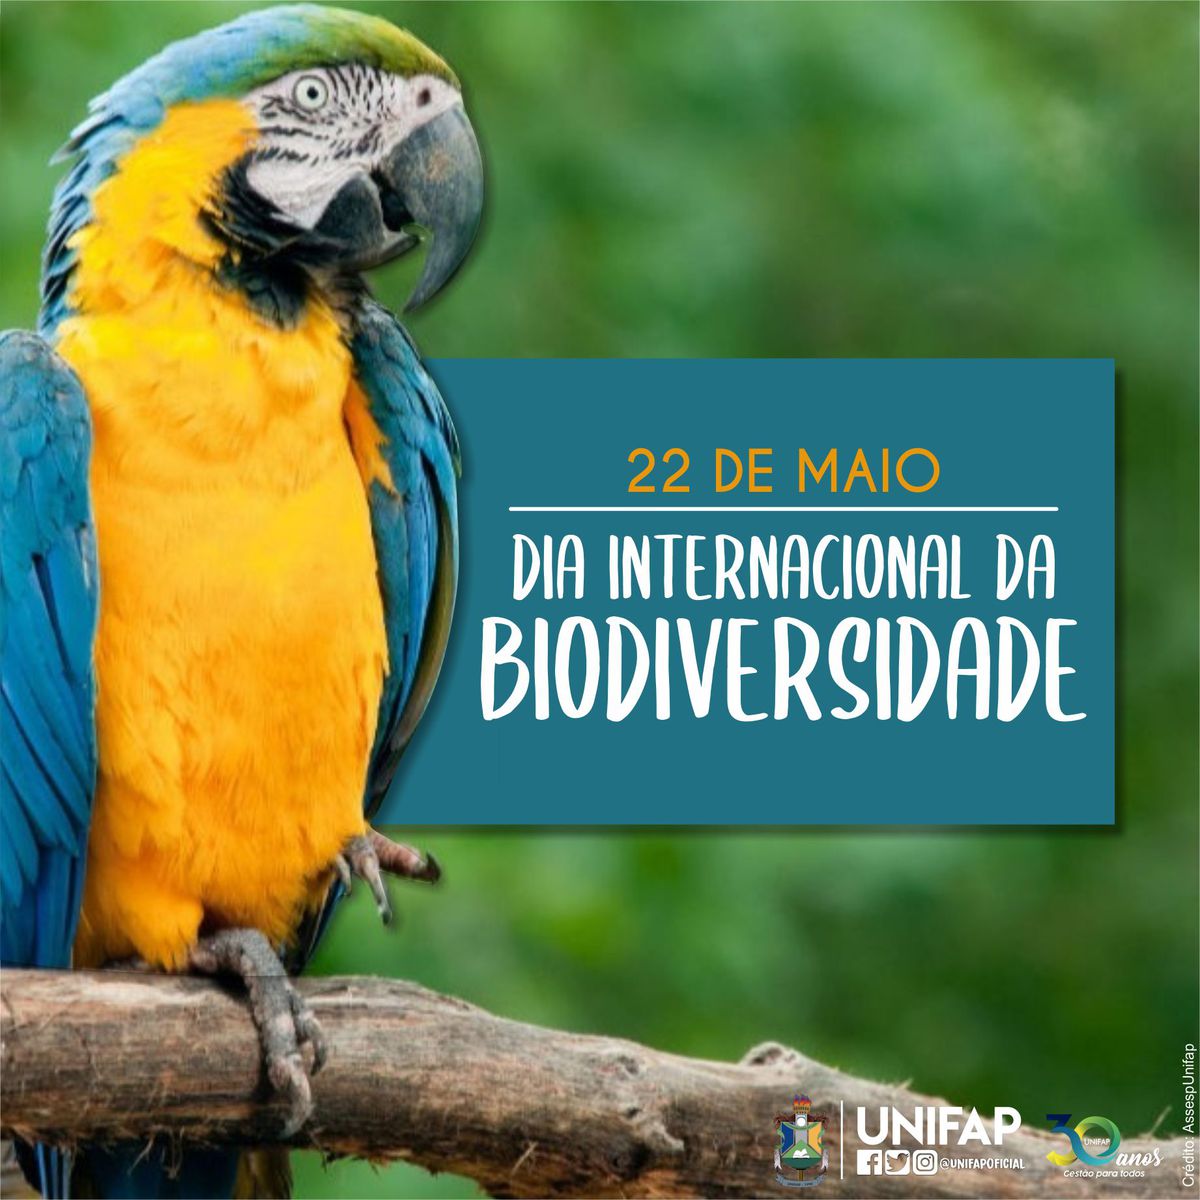 22 de maio, Dia Internacional da Biodiversidade